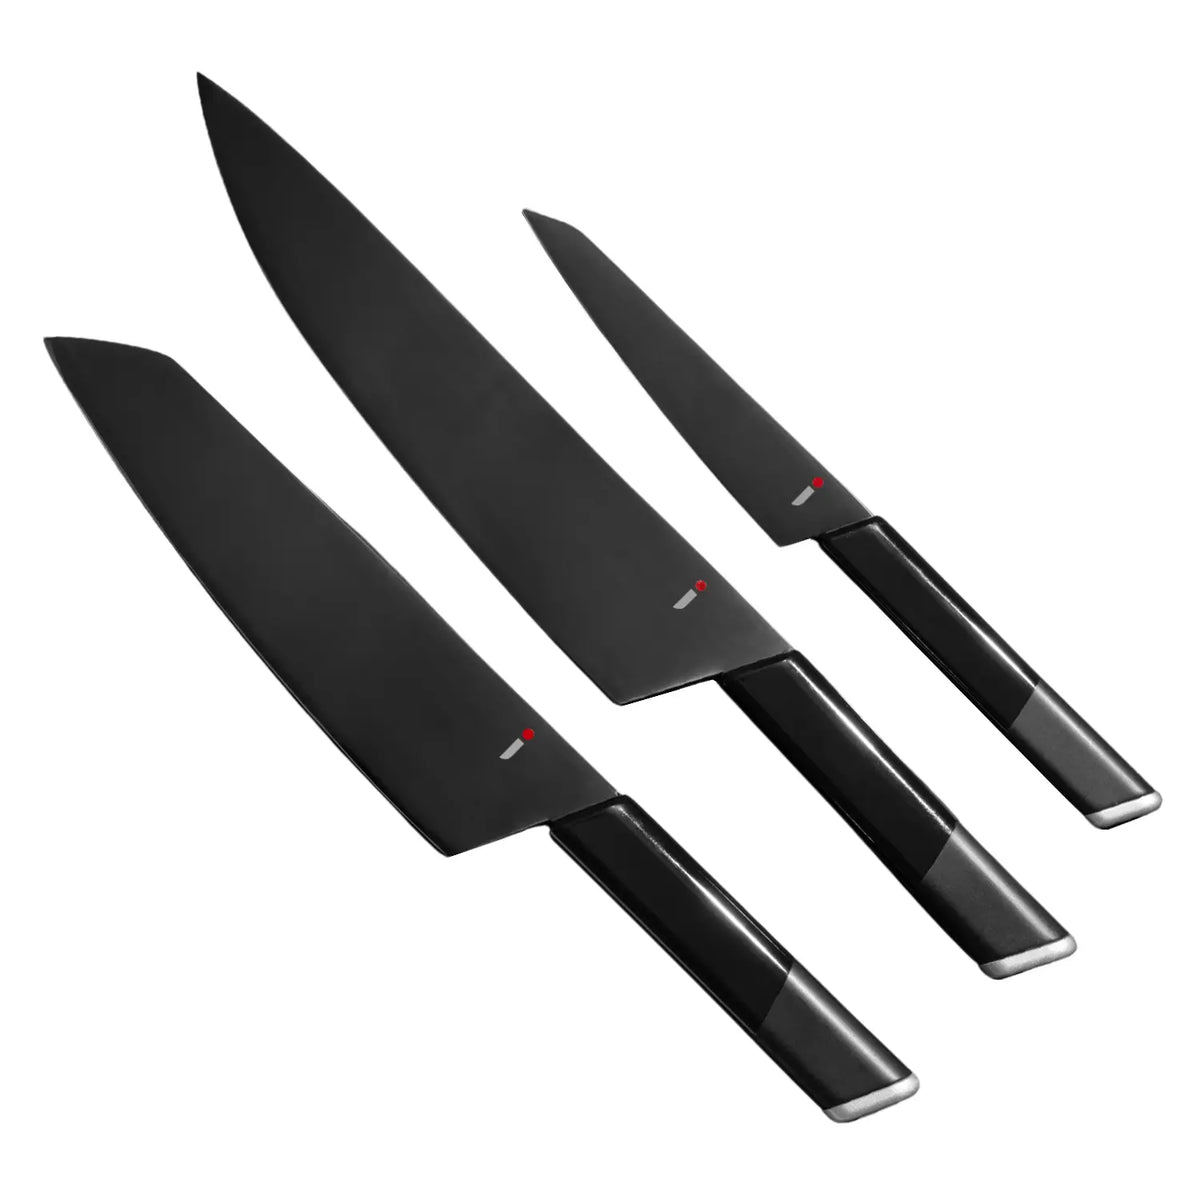 Marshall Fields Solingen Germany 6 Steak Knife Set Stainless Wood Hand